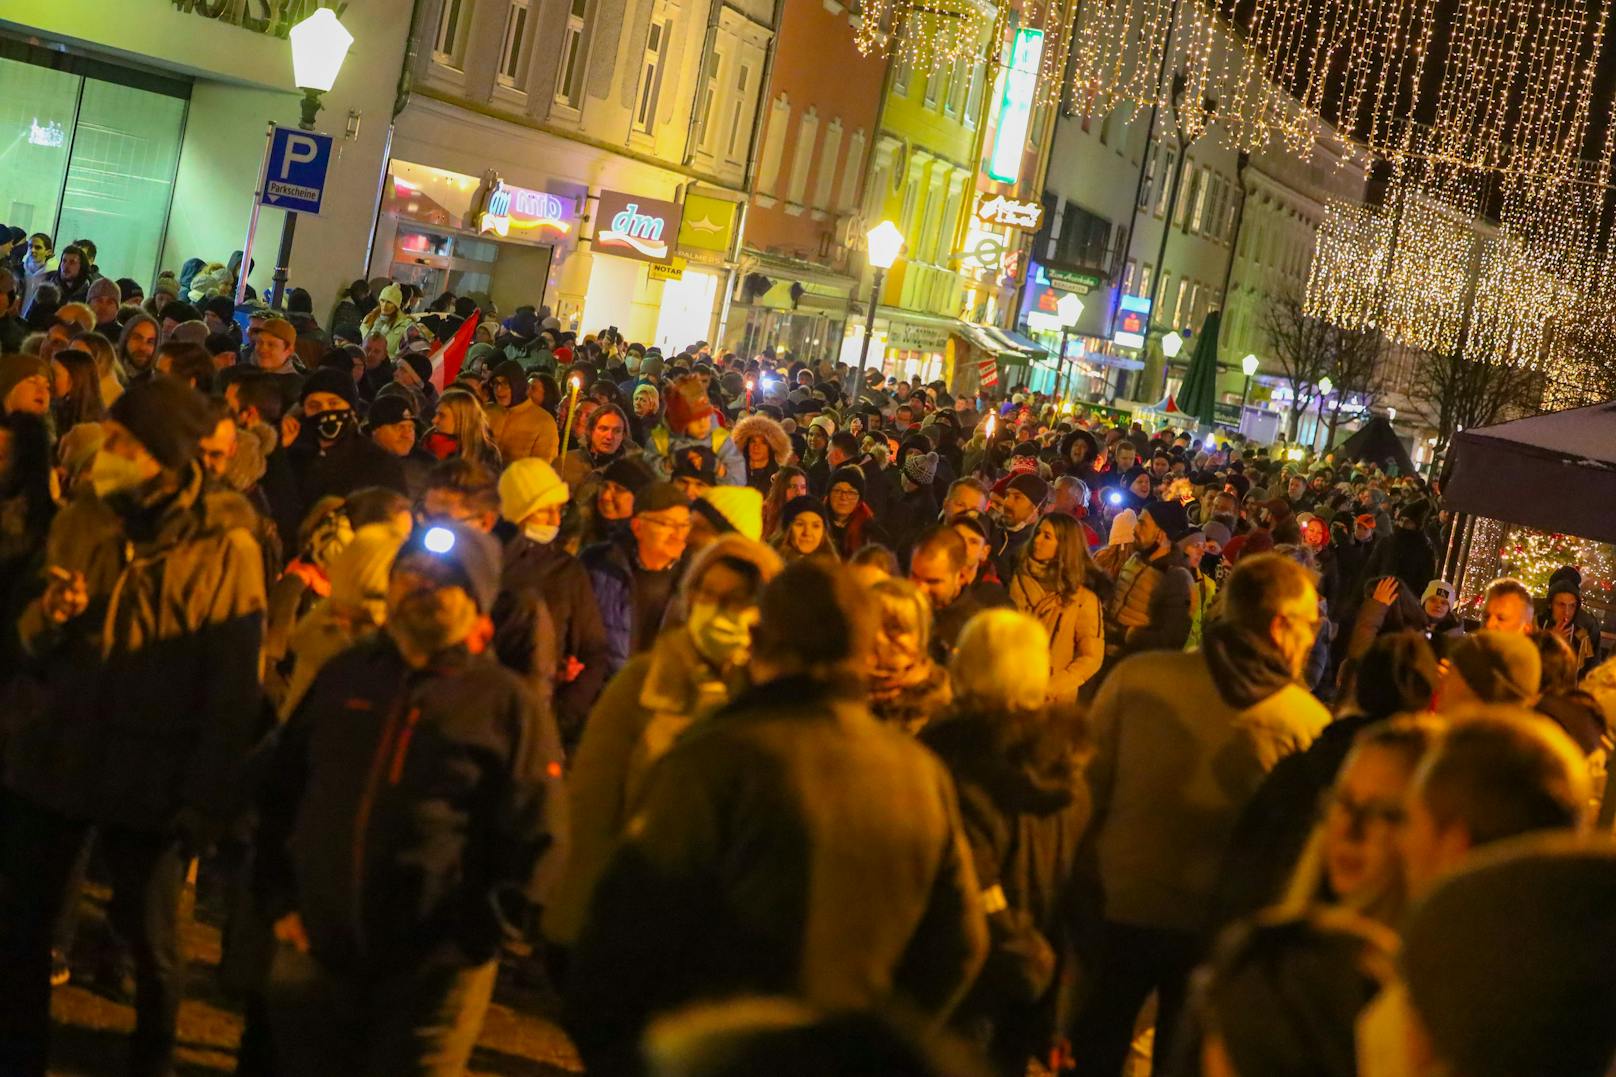 Bei Demonstrationen in Vöcklabruck und Linz waren insgesamt rund 2.000 Menschen. Die Infektionszahlen sinken nur langsam. Weil sich viele nicht an die Maßnahmen halten?